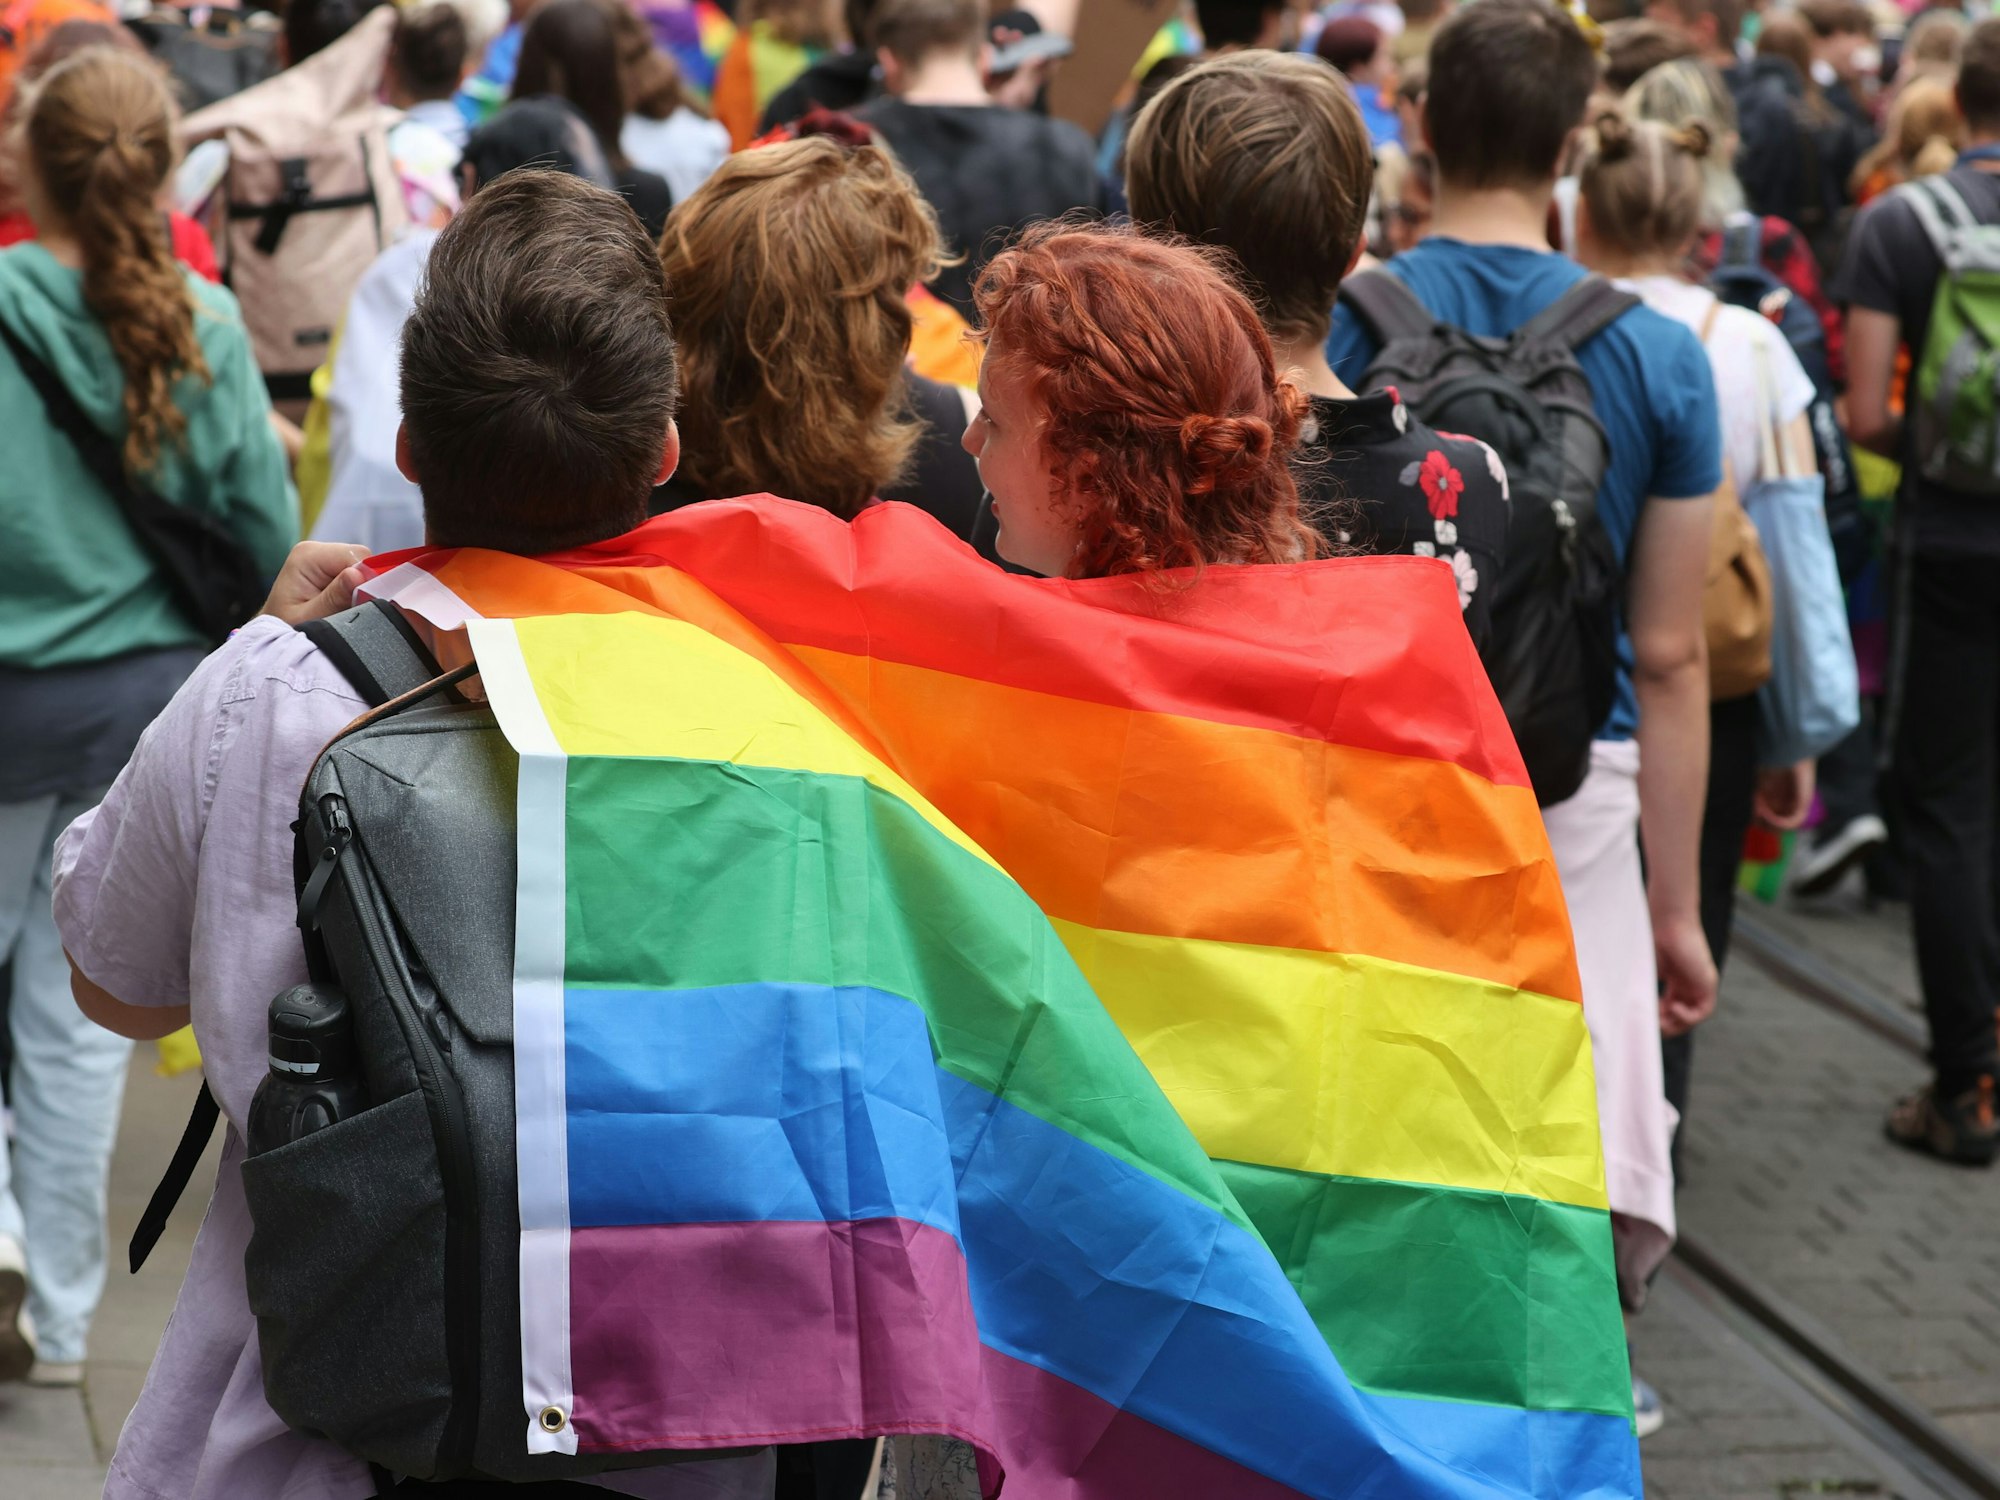 Menschen gehen beim Erfurter Christopher Street Day (CSD) für mehr Toleranz und Vielfalt in der Gesellschaft durch die Innenstadt, zwei Personen tragen gemeinsam eine Regenbogenfahne.